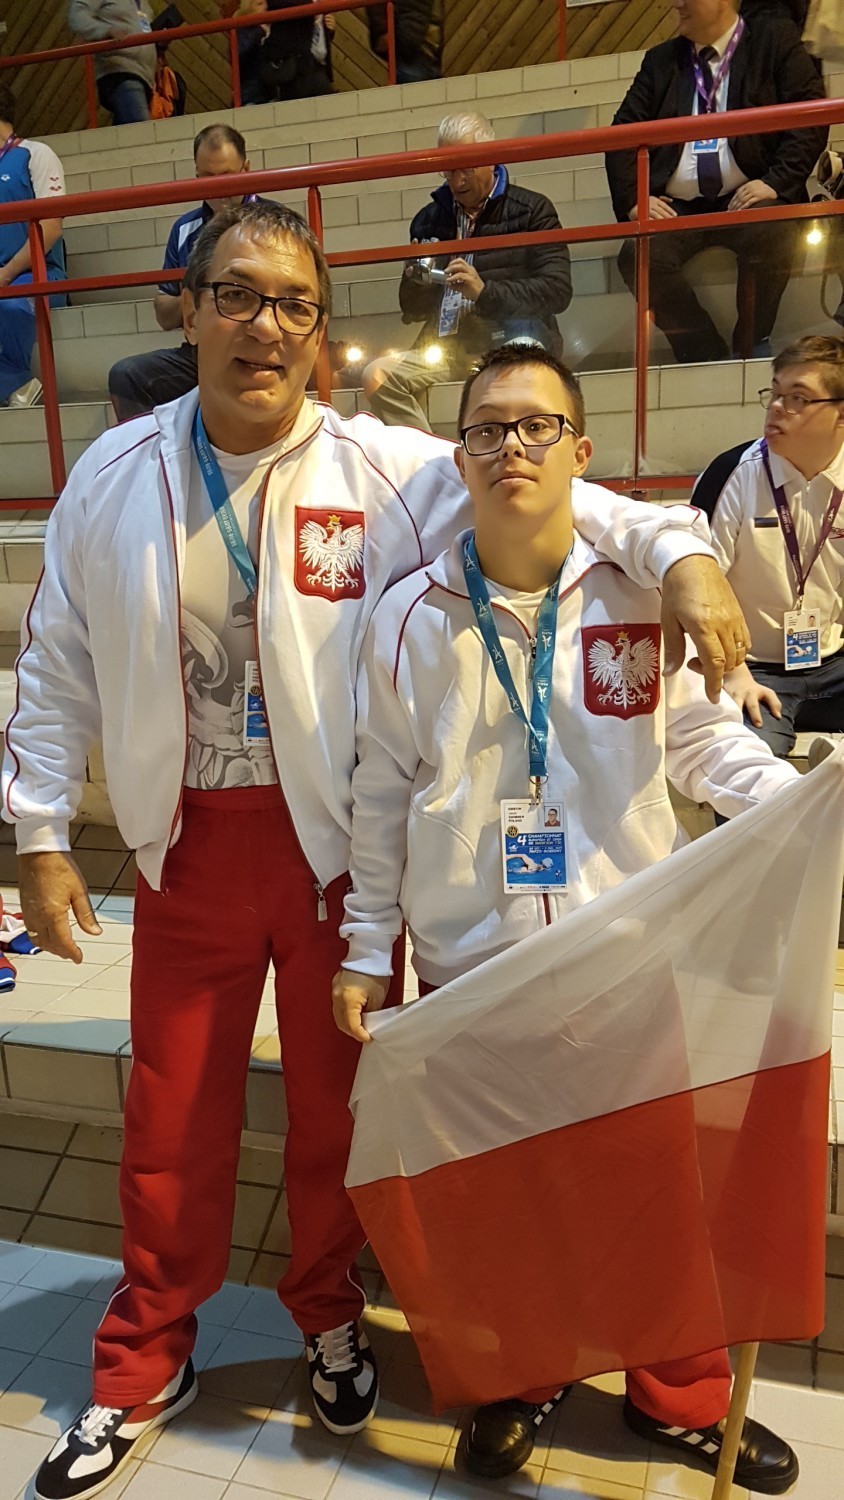 Jedyny polski zawodnik na Mistrzostwach Europy w pływaniu osób z zespołem Downa - Francja 2017